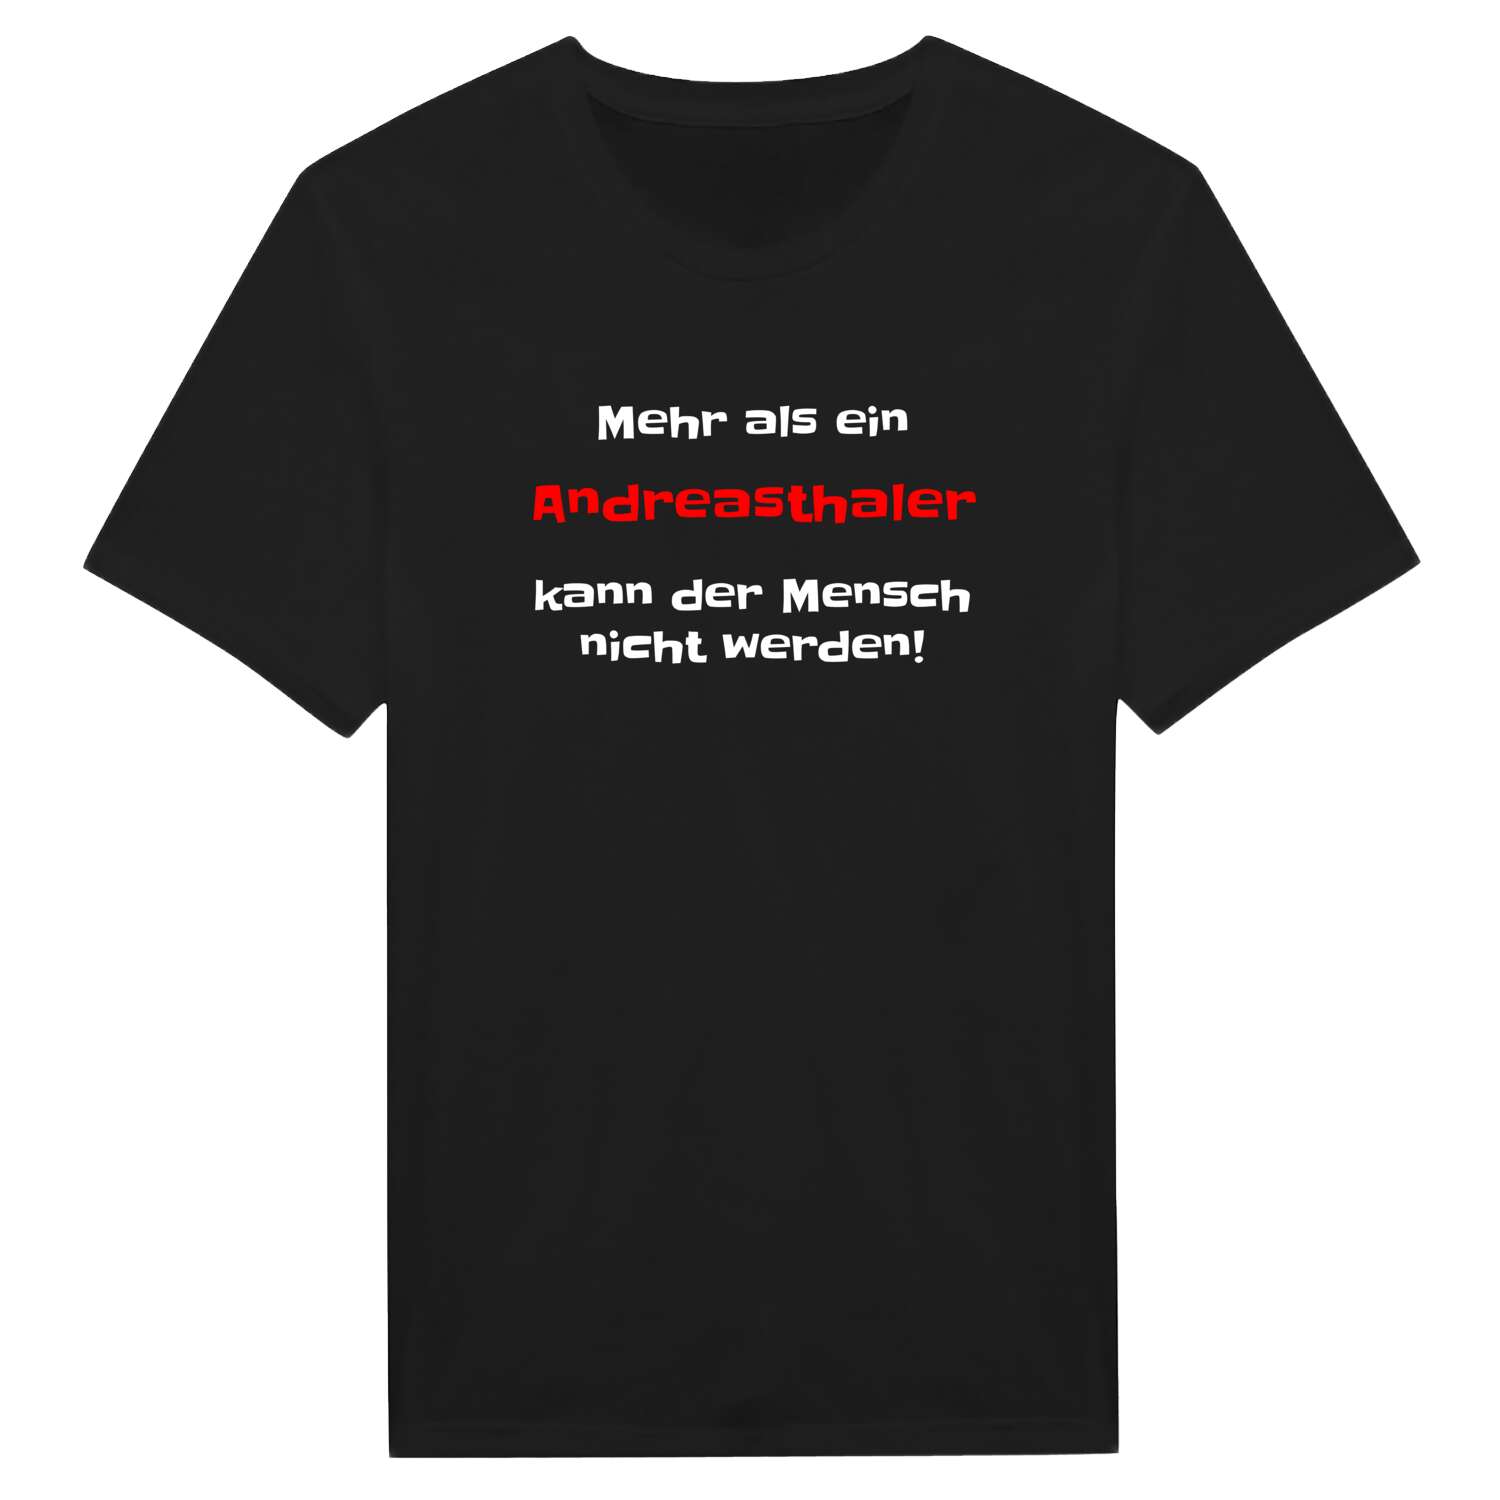 Andreasthal T-Shirt »Mehr als ein«